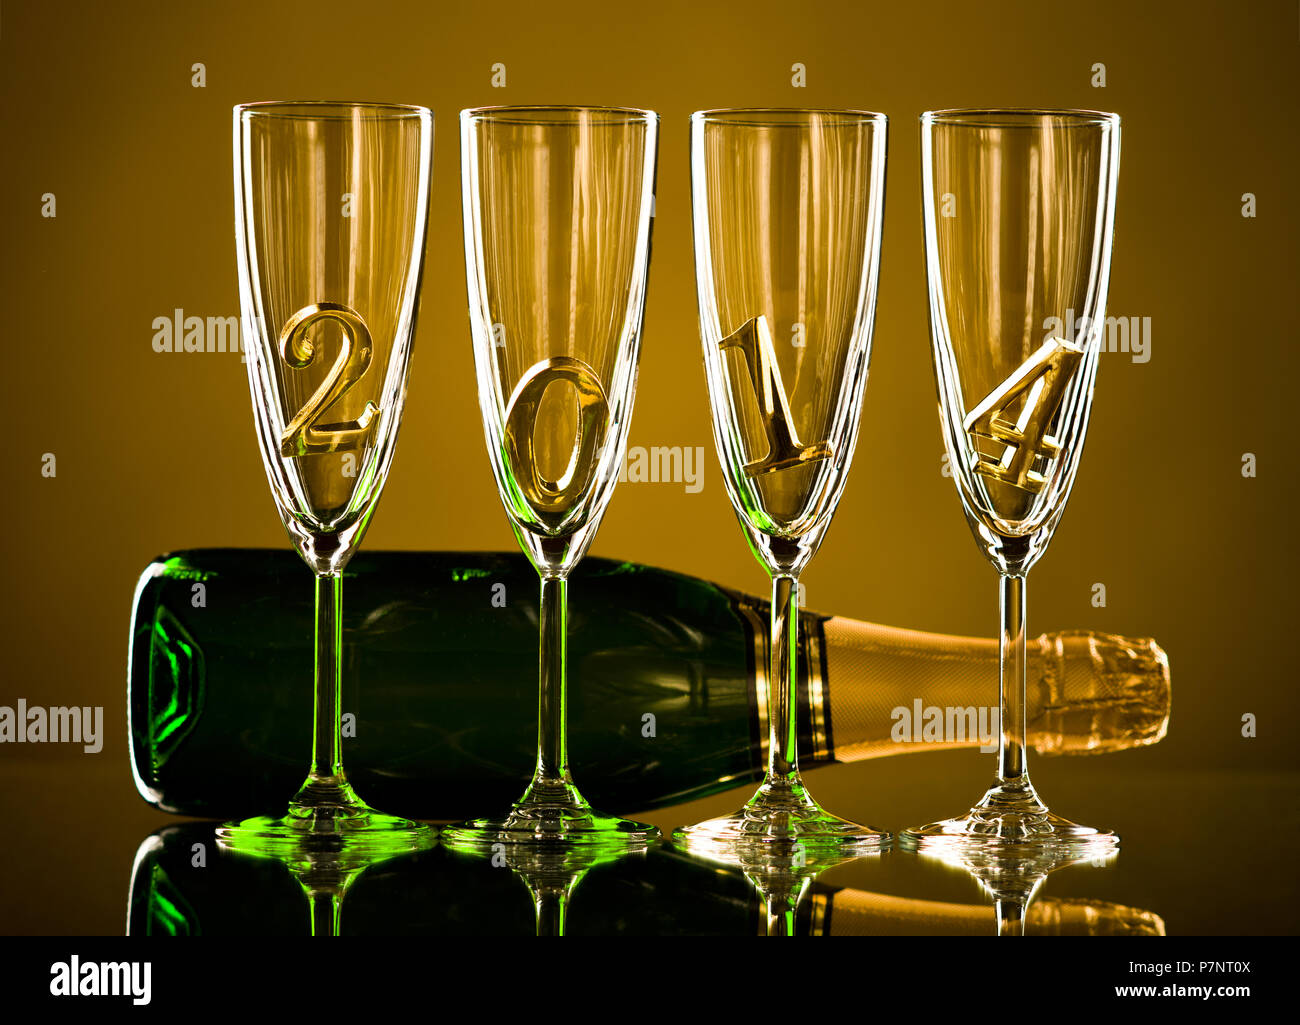 Flasche Champagner mit vier Glas Becher und der Zahl 2014, schöne feiern das neue Jahr Konzept Foto Stockfoto